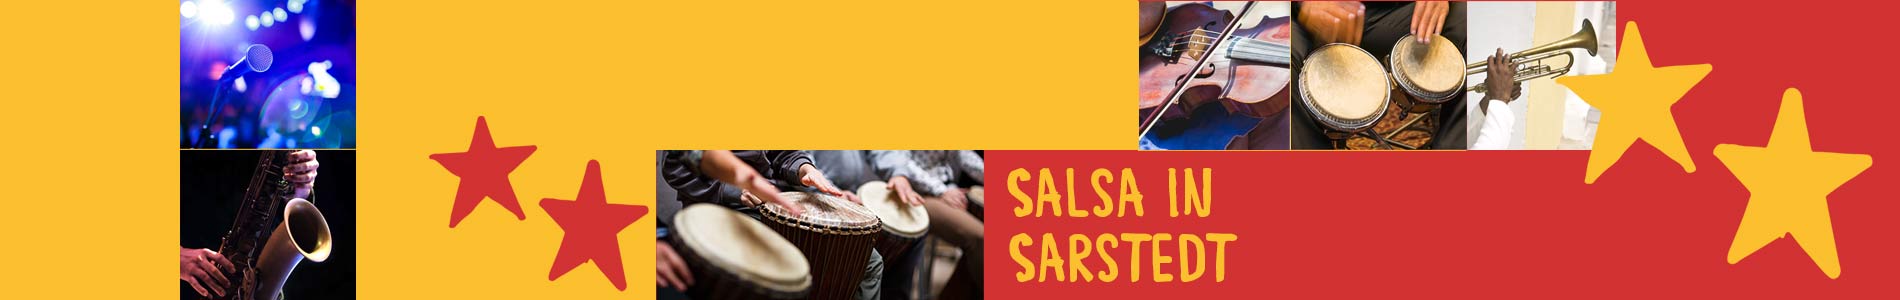 Salsa in Sarstedt – Salsa lernen und tanzen, Tanzkurse, Partys, Veranstaltungen